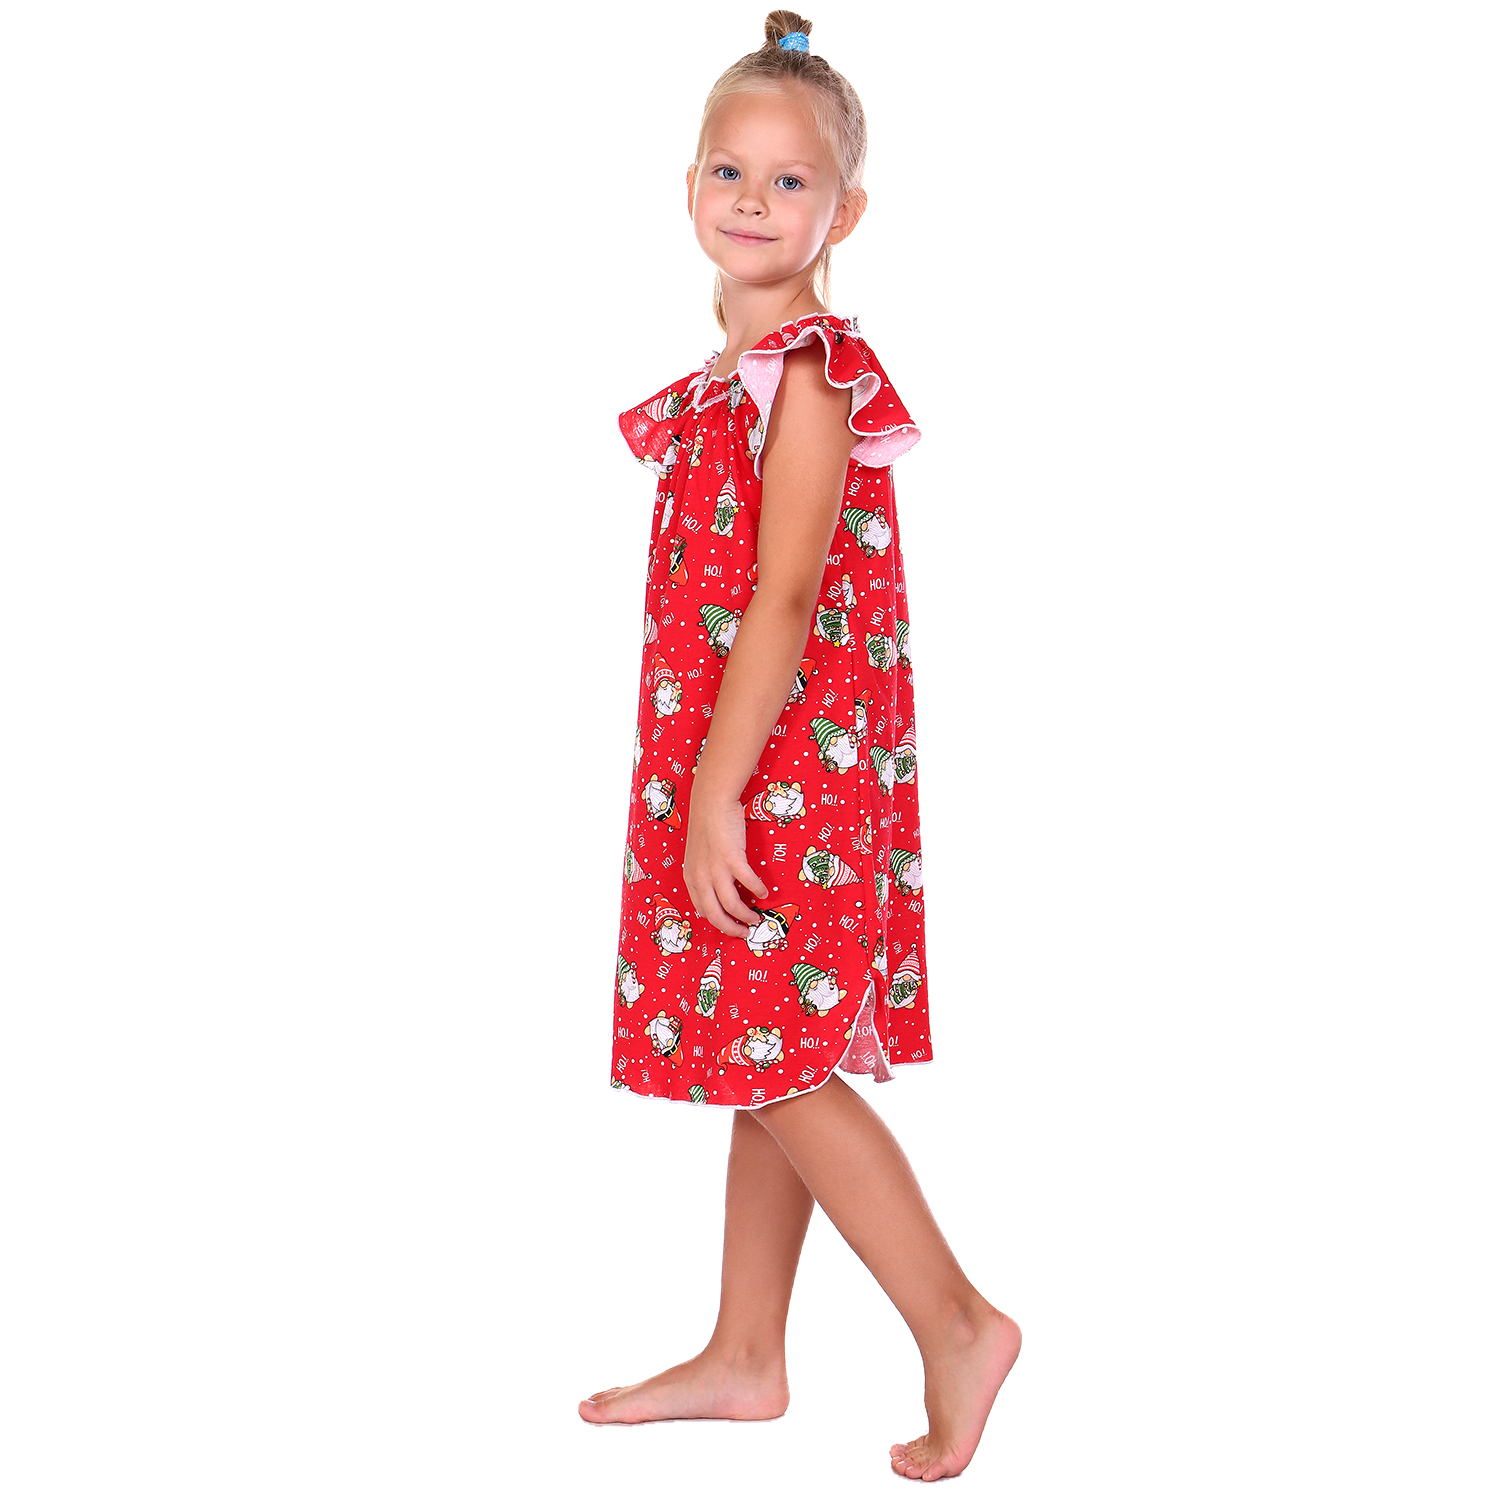 Сорочка ночная Детская Одежда 0003К/красный4 - фото 4